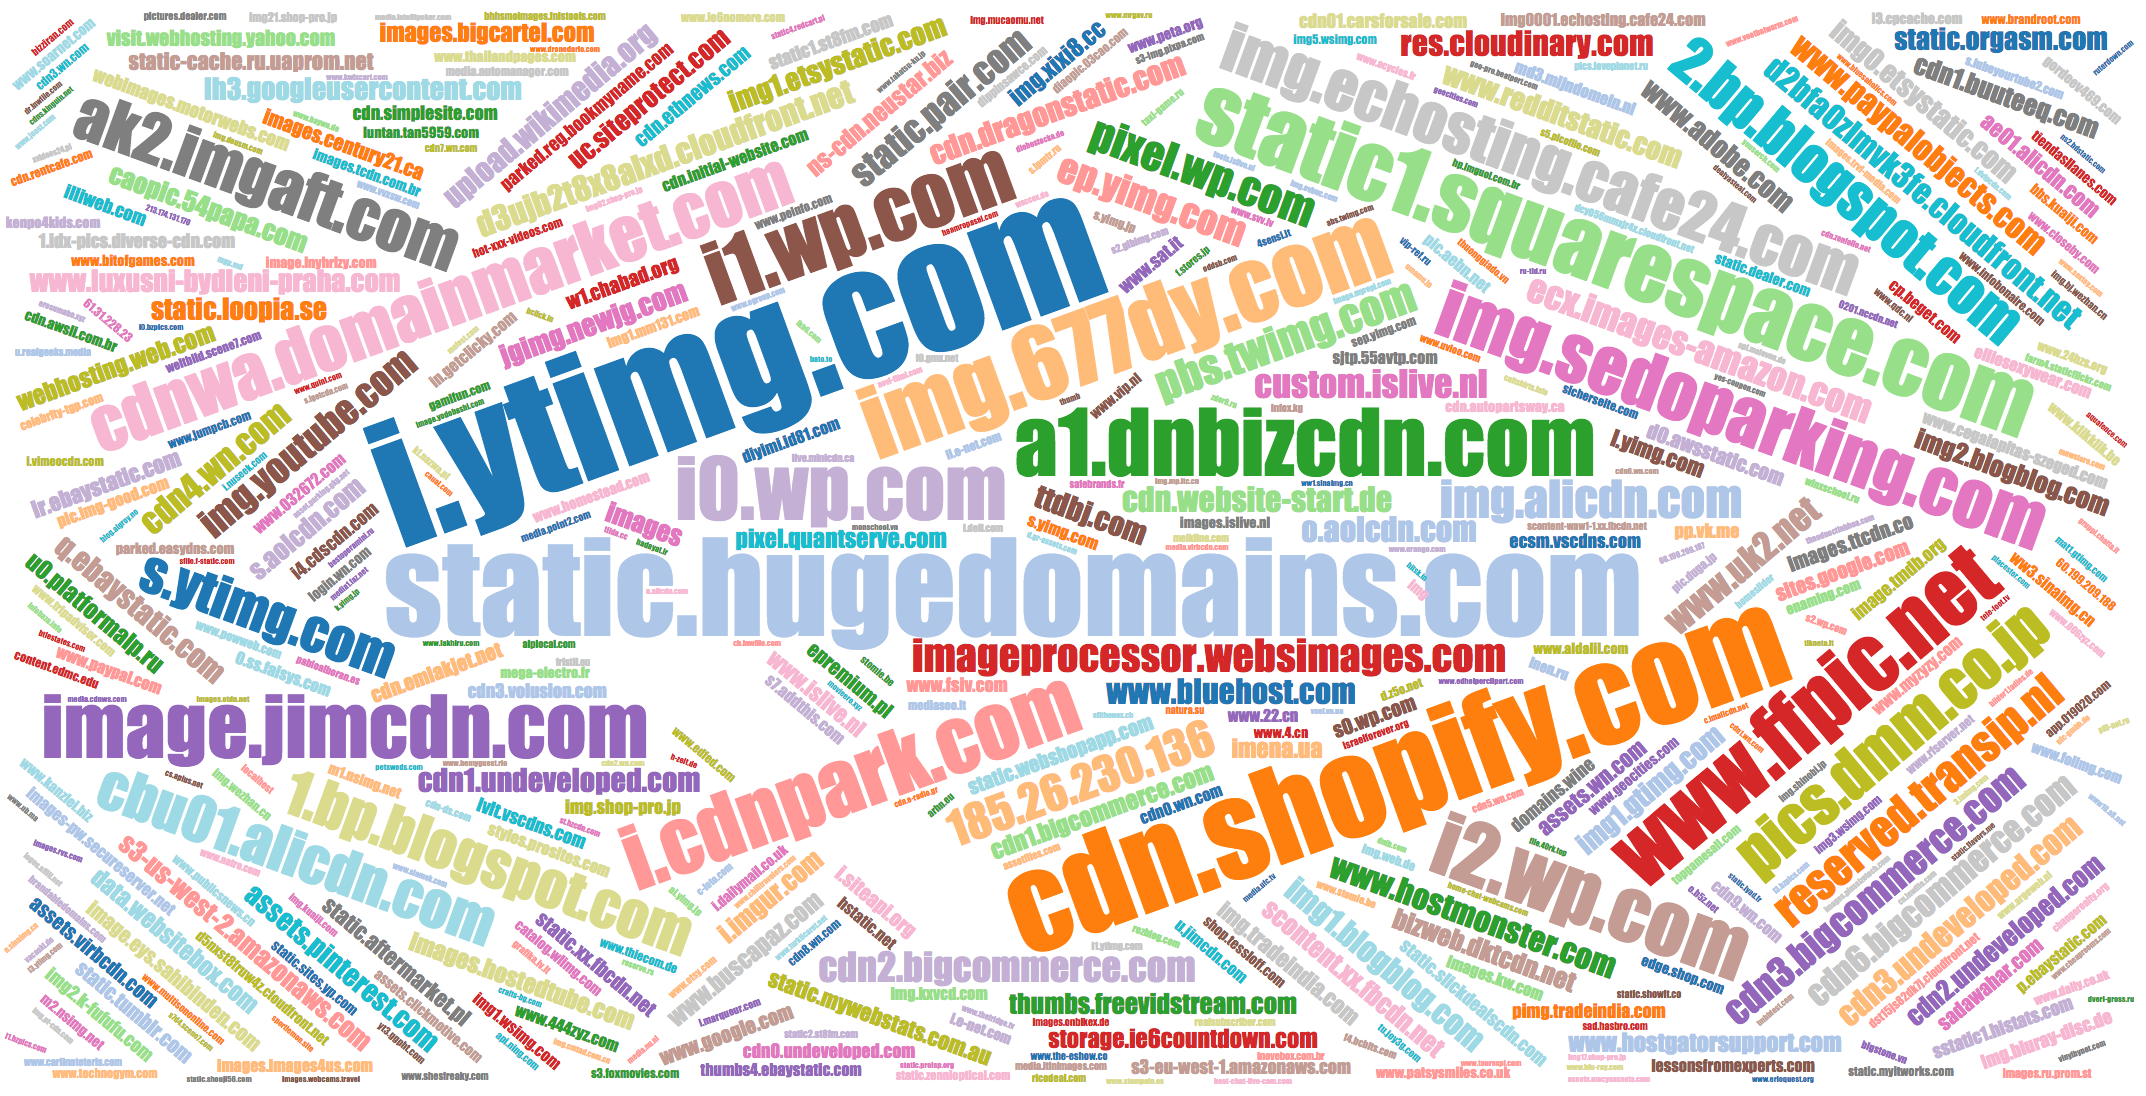 Popular names of IMG domains pbs.twimg.com, pixel.wp.com, etc.